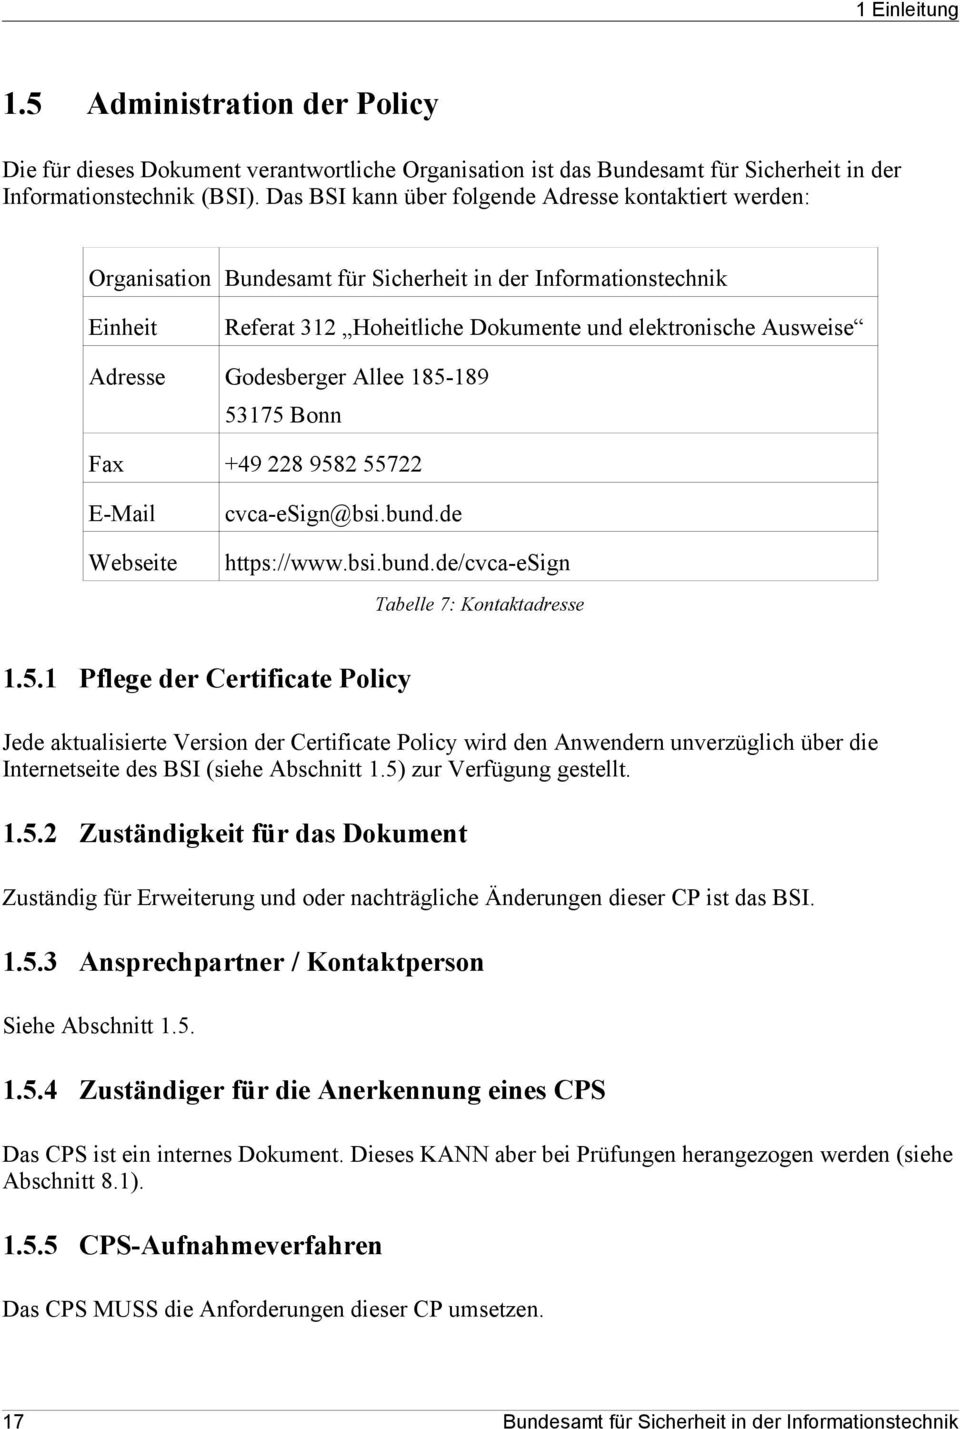 Godesberger Allee 185-189 53175 Bonn Fax +49 228 9582 55722 E-Mail Webseite cvca-esign@bsi.bund.de https://www.bsi.bund.de/cvca-esign Tabelle 7: Kontaktadresse 1.5.1 Pflege der Certificate Policy Jede aktualisierte Version der Certificate Policy wird den Anwendern unverzüglich über die Internetseite des BSI (siehe Abschnitt 1.